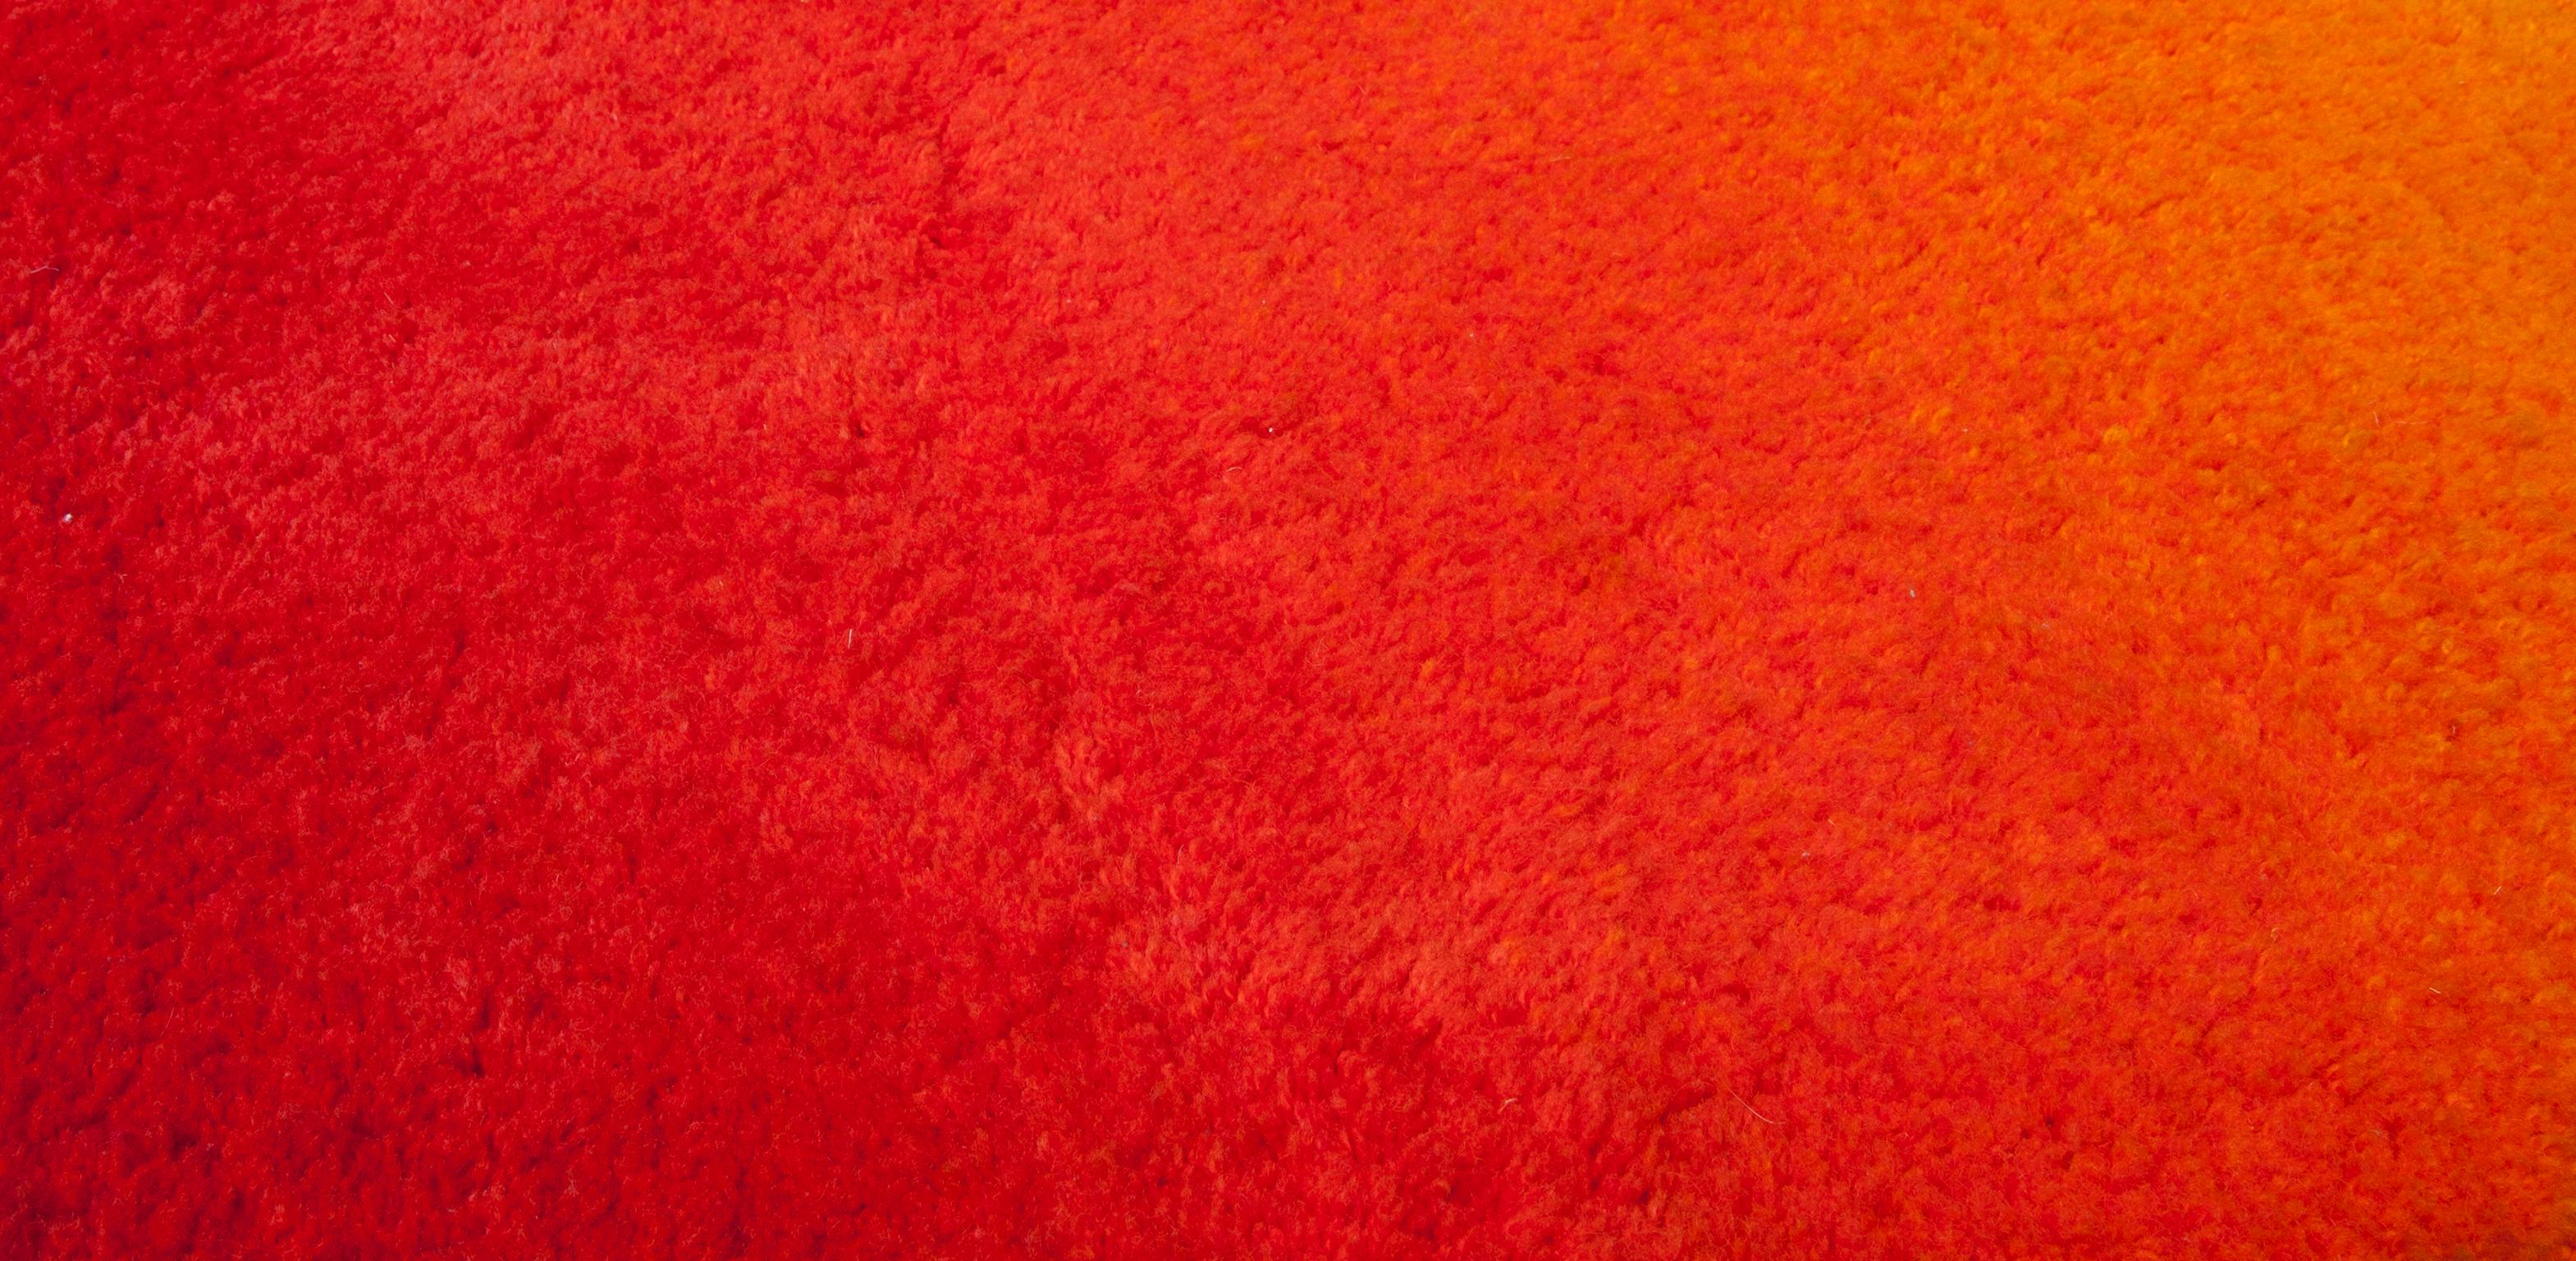 Hand-Woven Ewald Kröner Artistic Carpet 1970s Sun Motiv